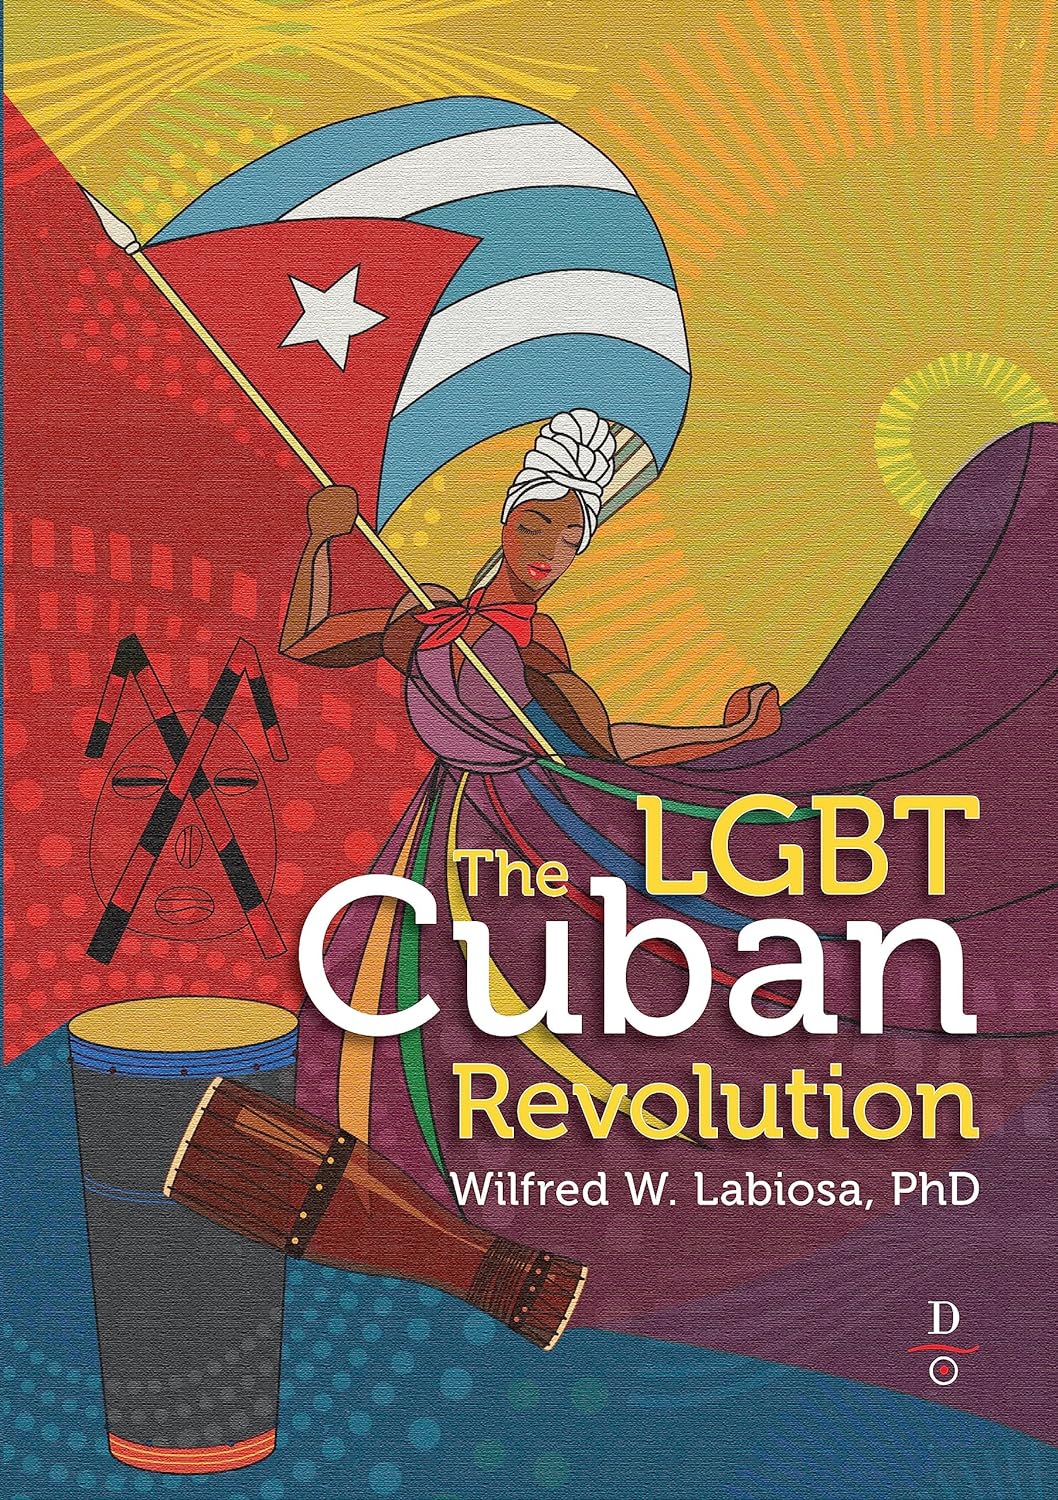 THE LGBT CUBAN REVOLUTION - Wilfred W. Labiosa